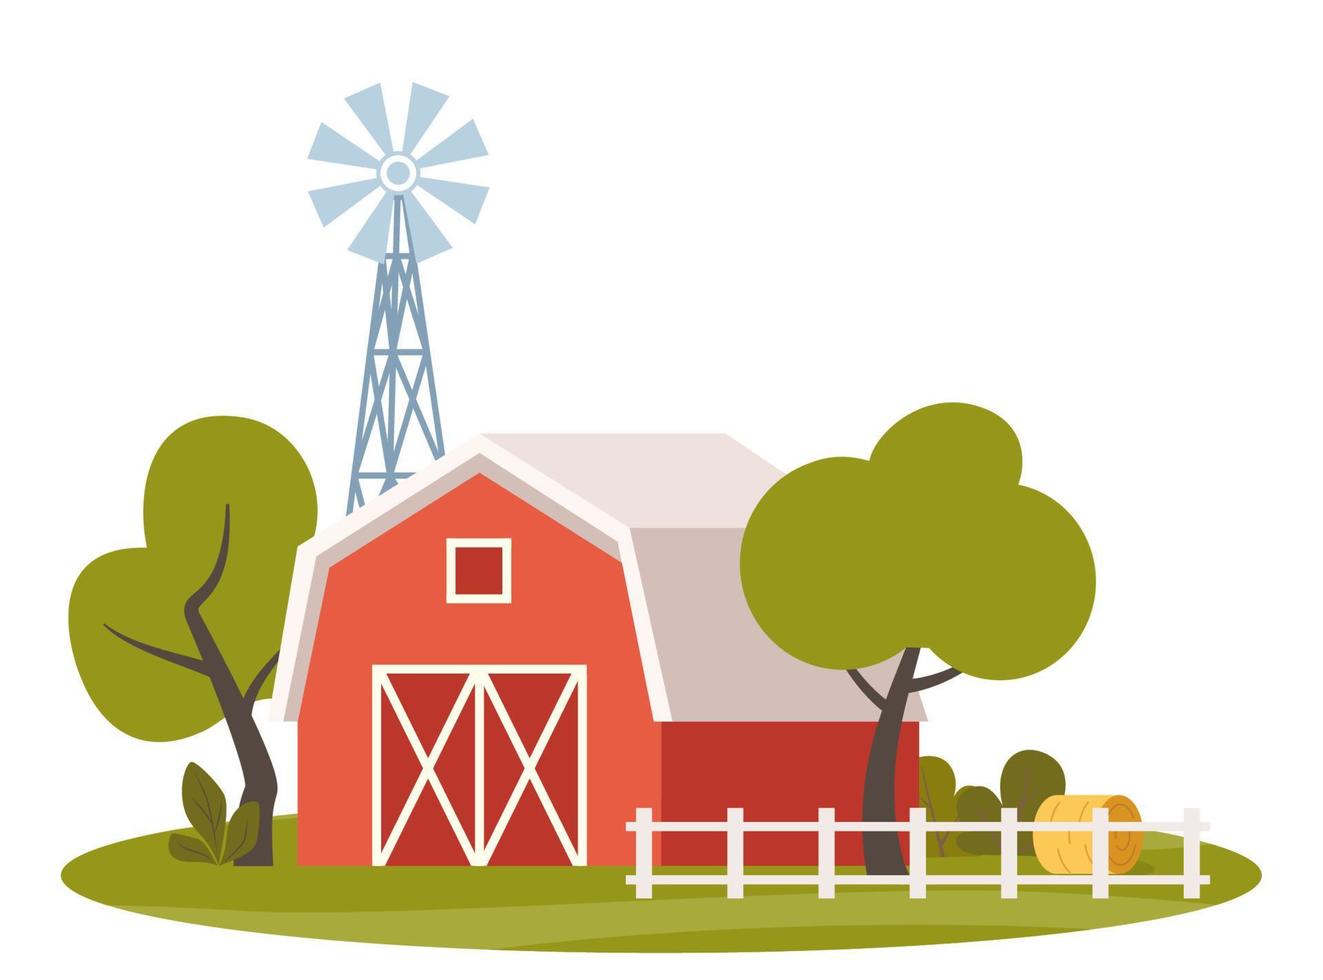 cena de fazenda com celeiro vermelho e moinho de vento, árvore, cerca, palheiro. paisagem rural. agricultura e conceito de agricultura. ilustração em vetor bonito.